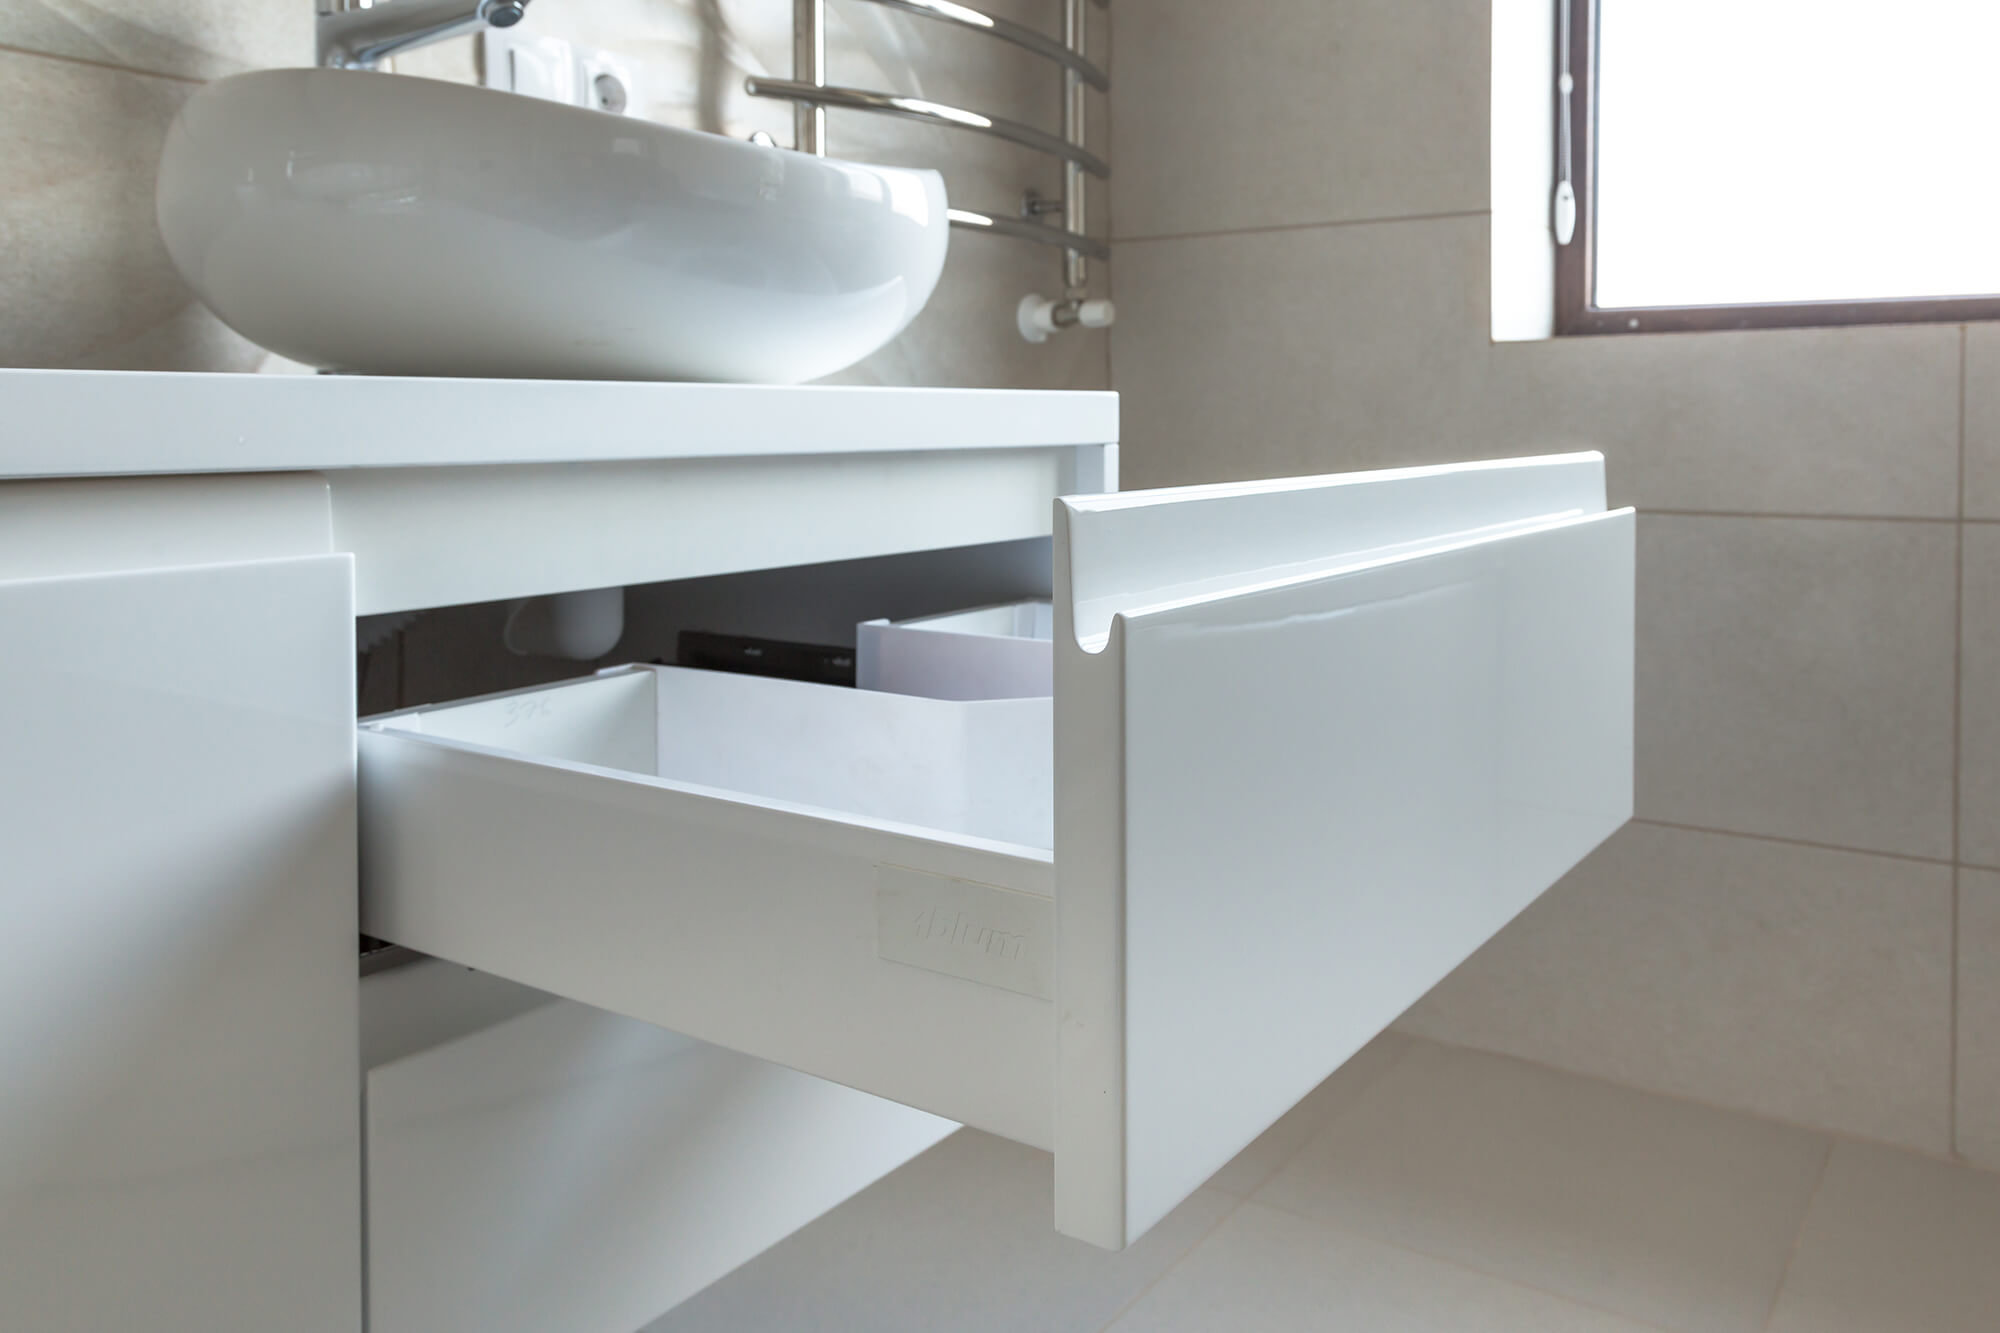 Навесная мебель в ванную с ящиками Blum Tandembox Antaro - myhome.md